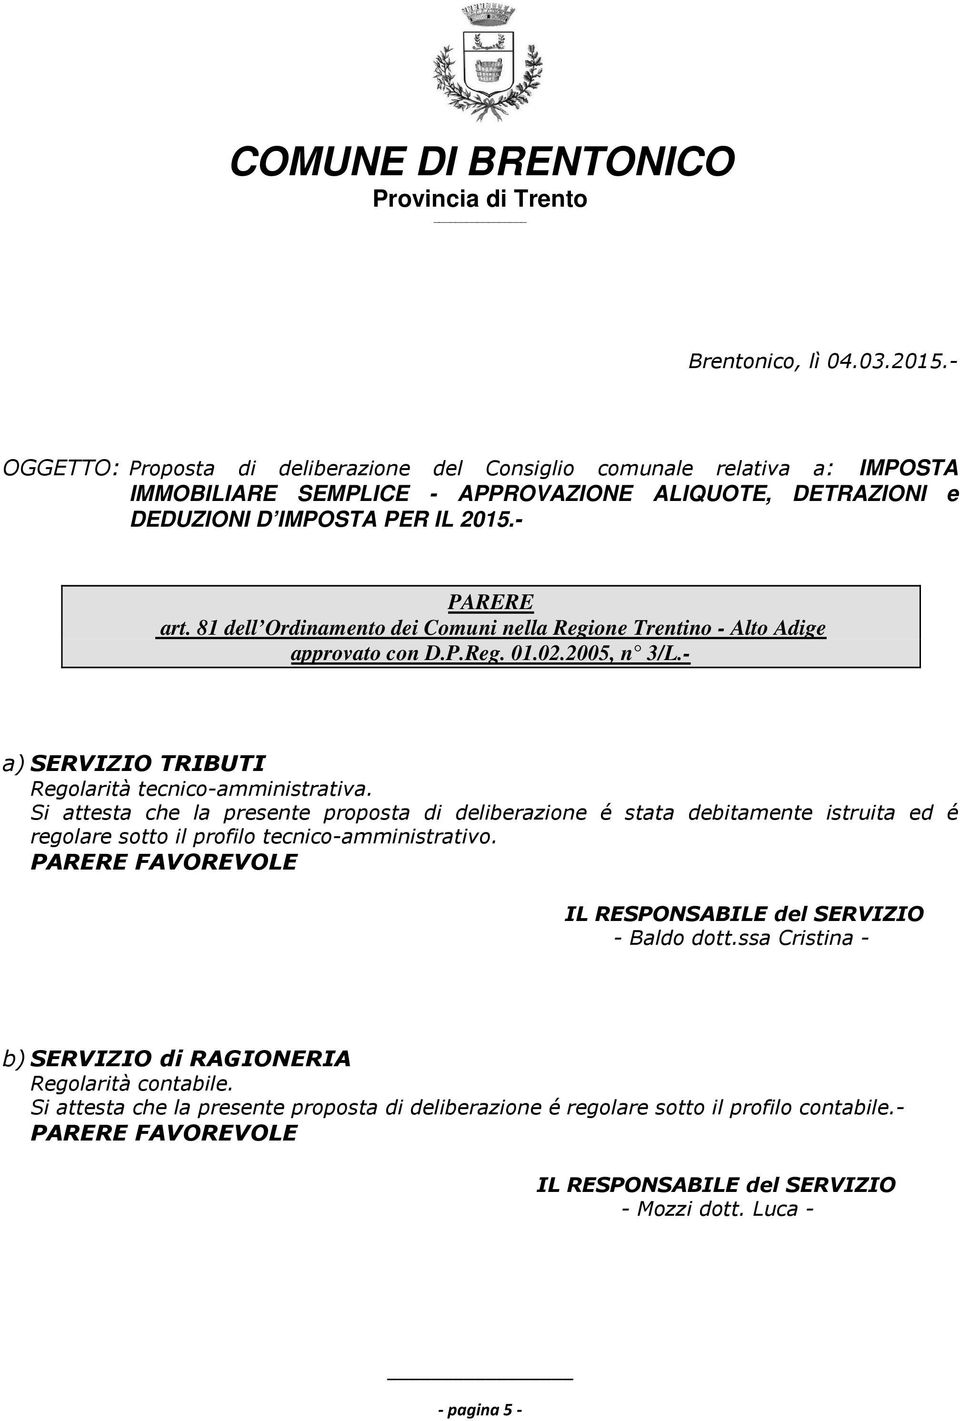 81 dell Ordinamento dei Comuni nella Regione Trentino - Alto Adige approvato con D.P.Reg. 01.02.2005, n 3/L.- a) SERVIZIO TRIBUTI Regolarità tecnico-amministrativa.